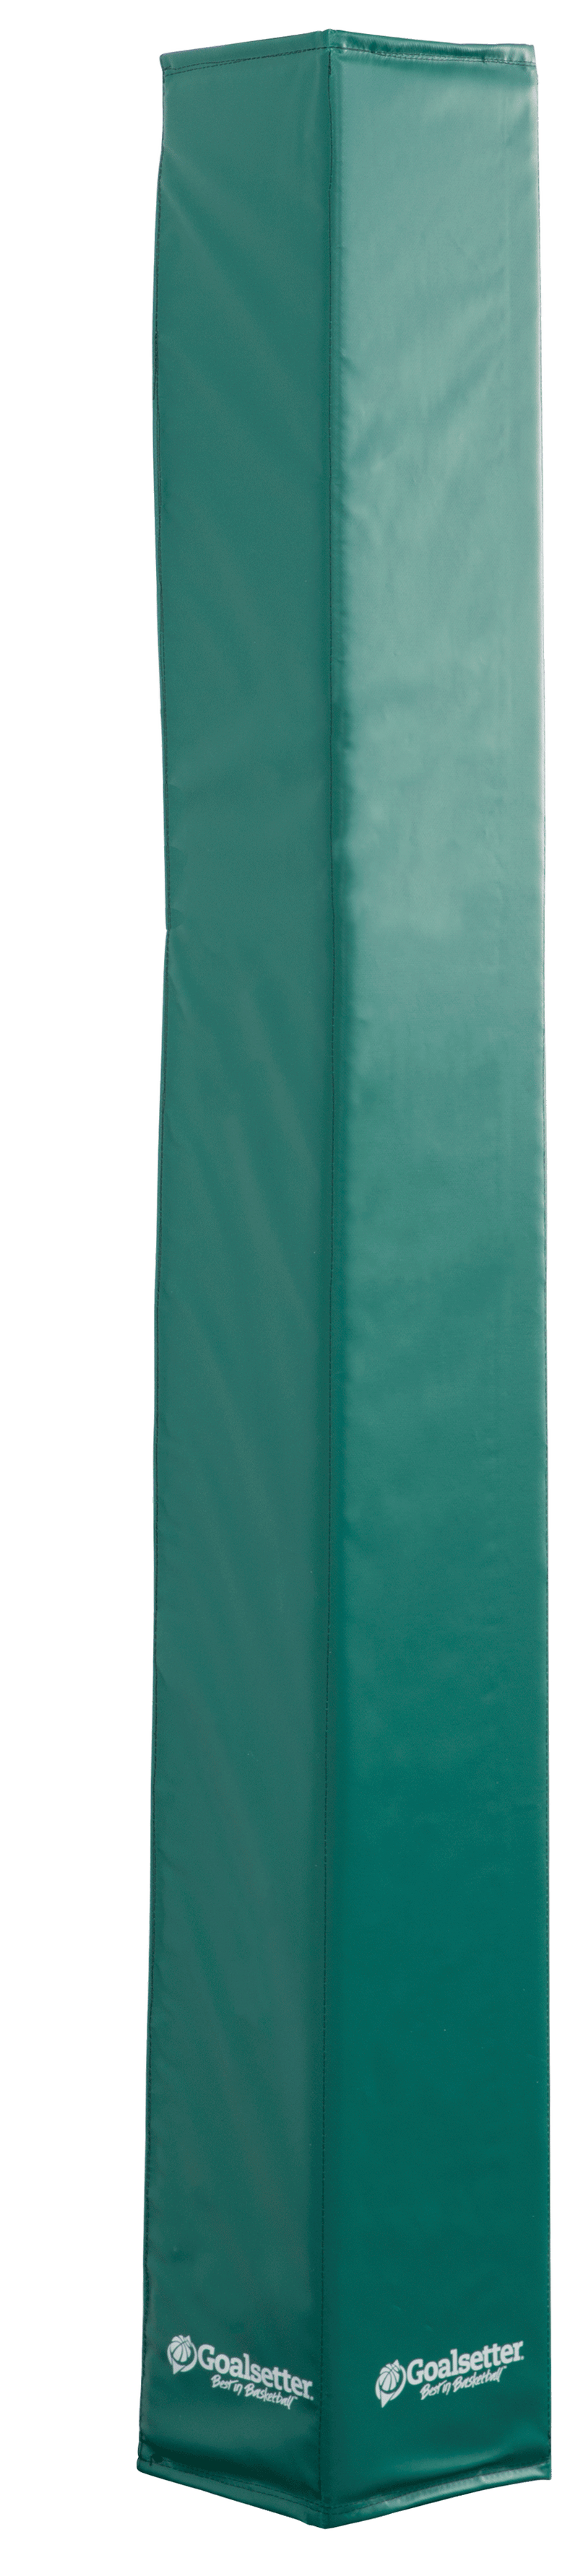 Goalsetter Basketball Custom Fit Pole Pad (5-6") - Green